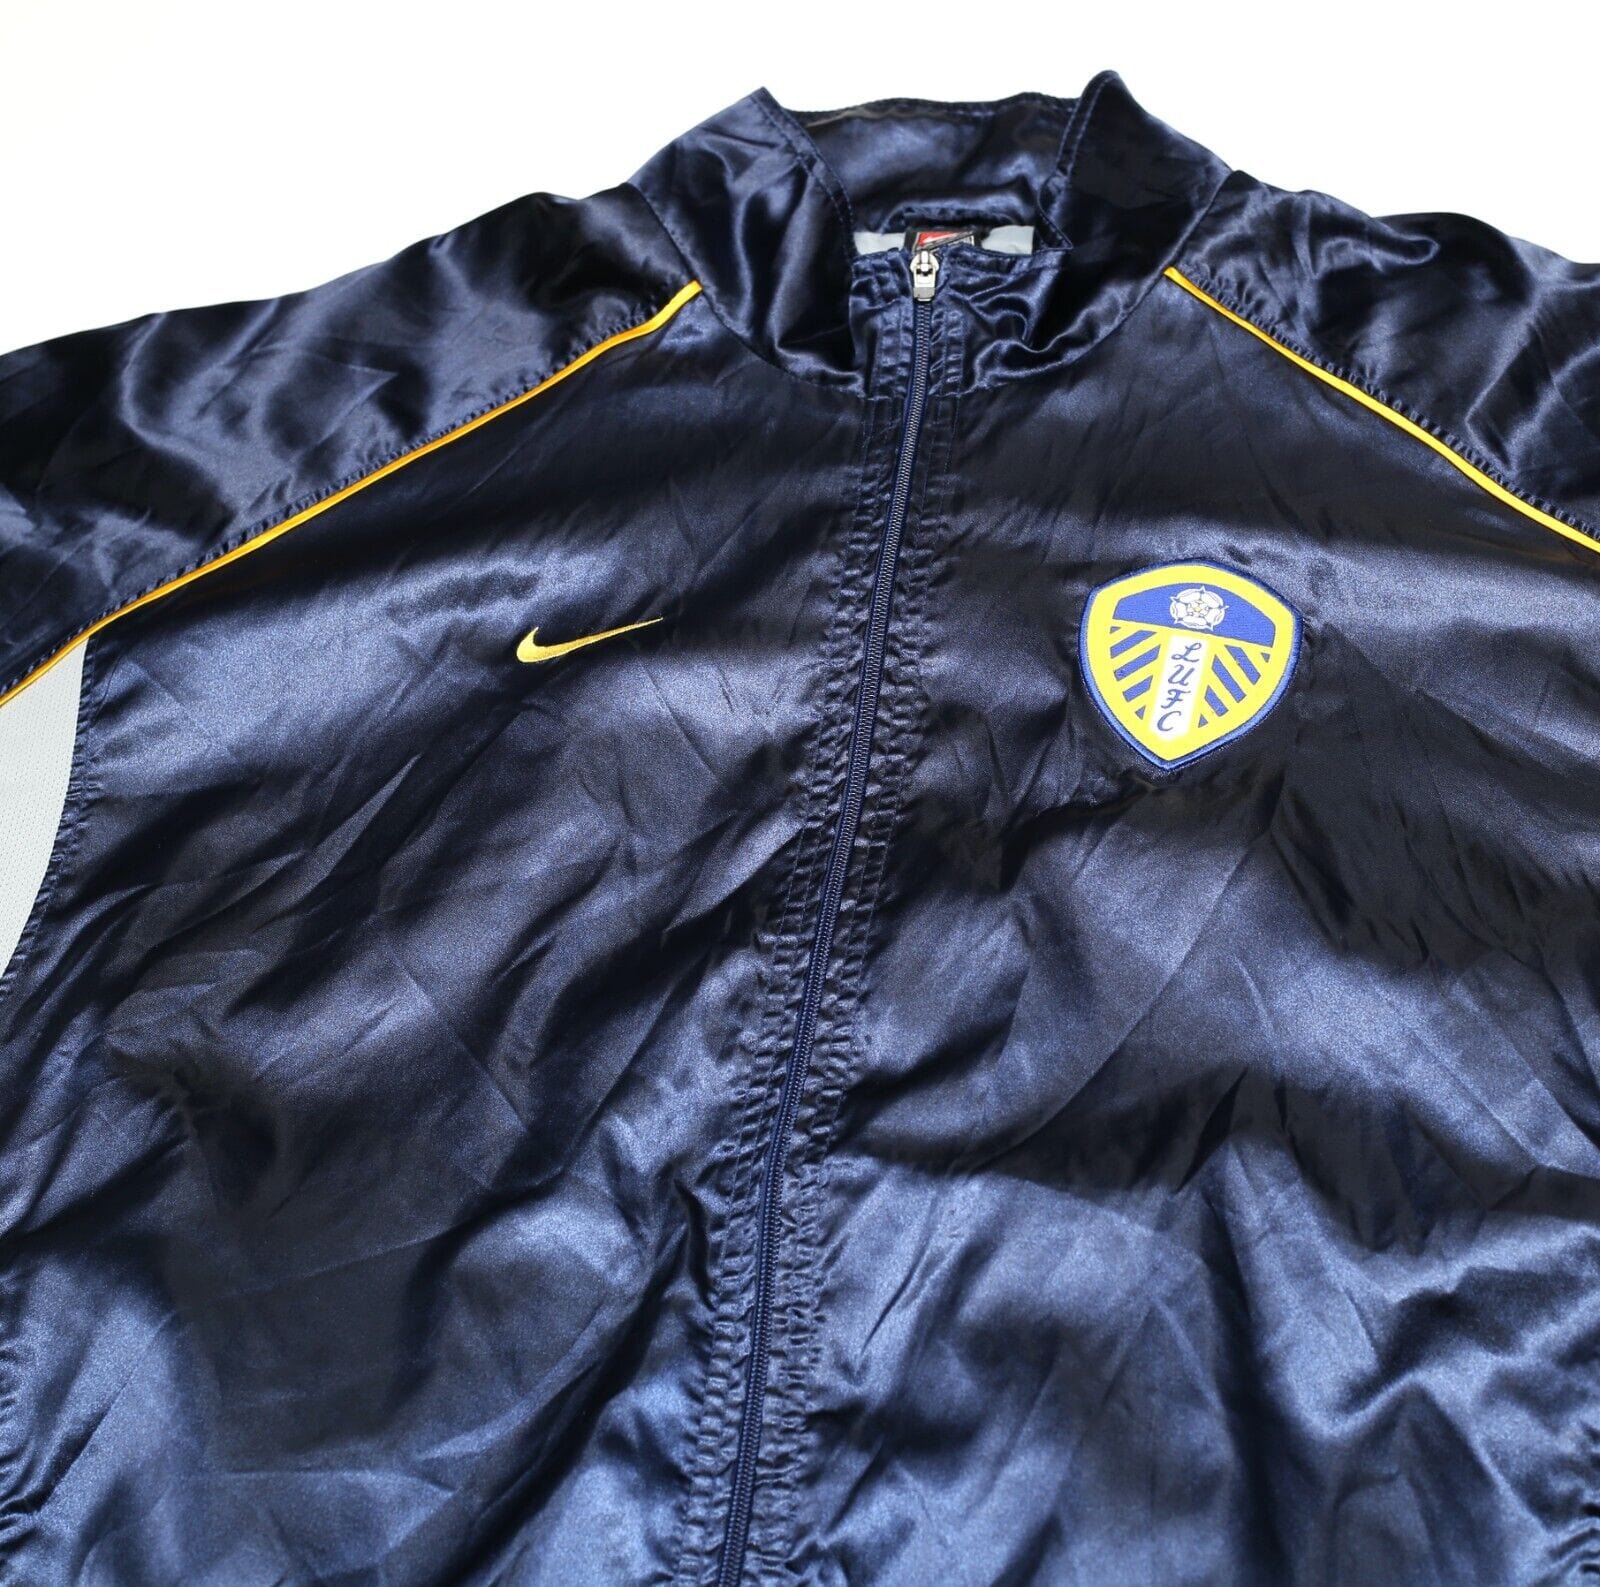 2000/02 LEEDS UNITED Vintage Nike Football Rain Jacket (XL)